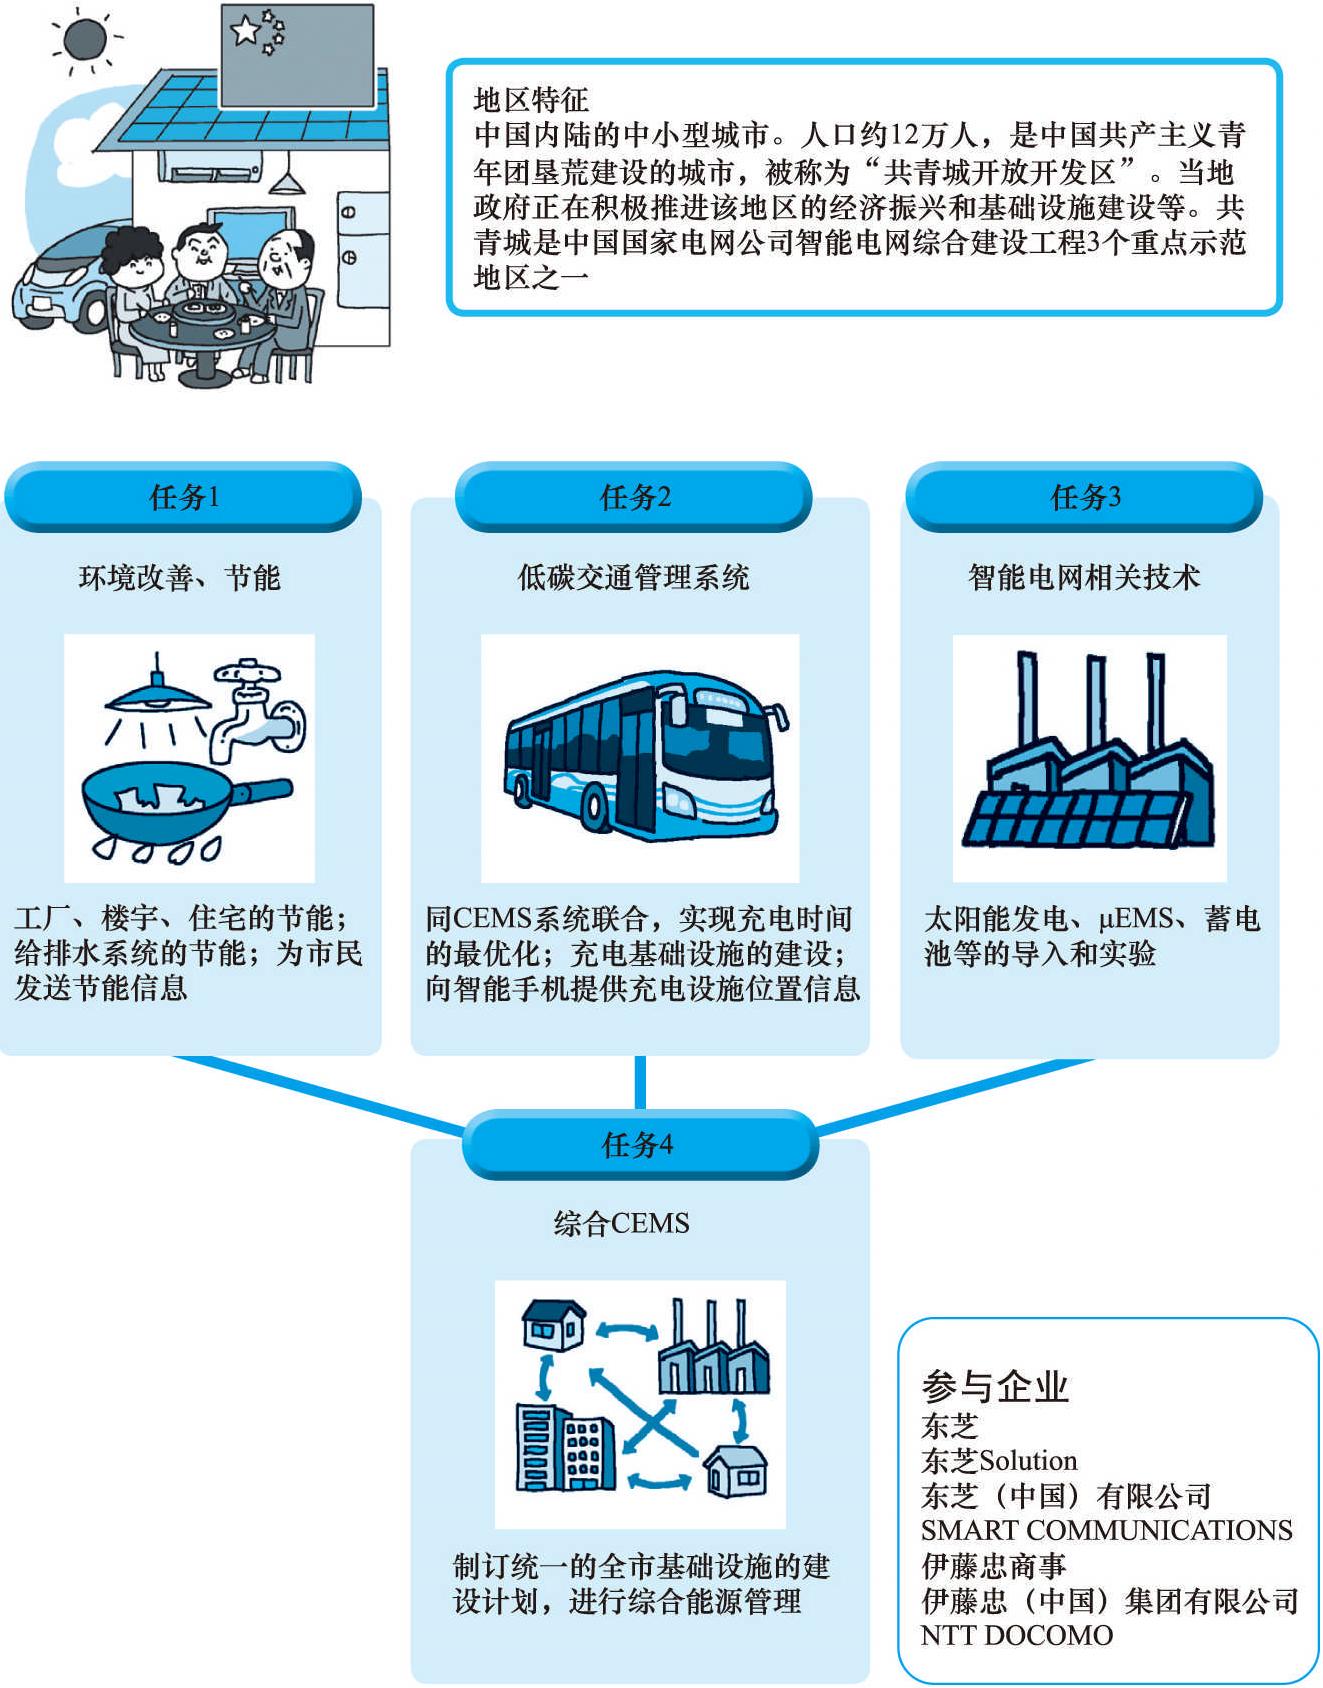 77 中国江西省的智能社区试点工程是一个什么样的项目?